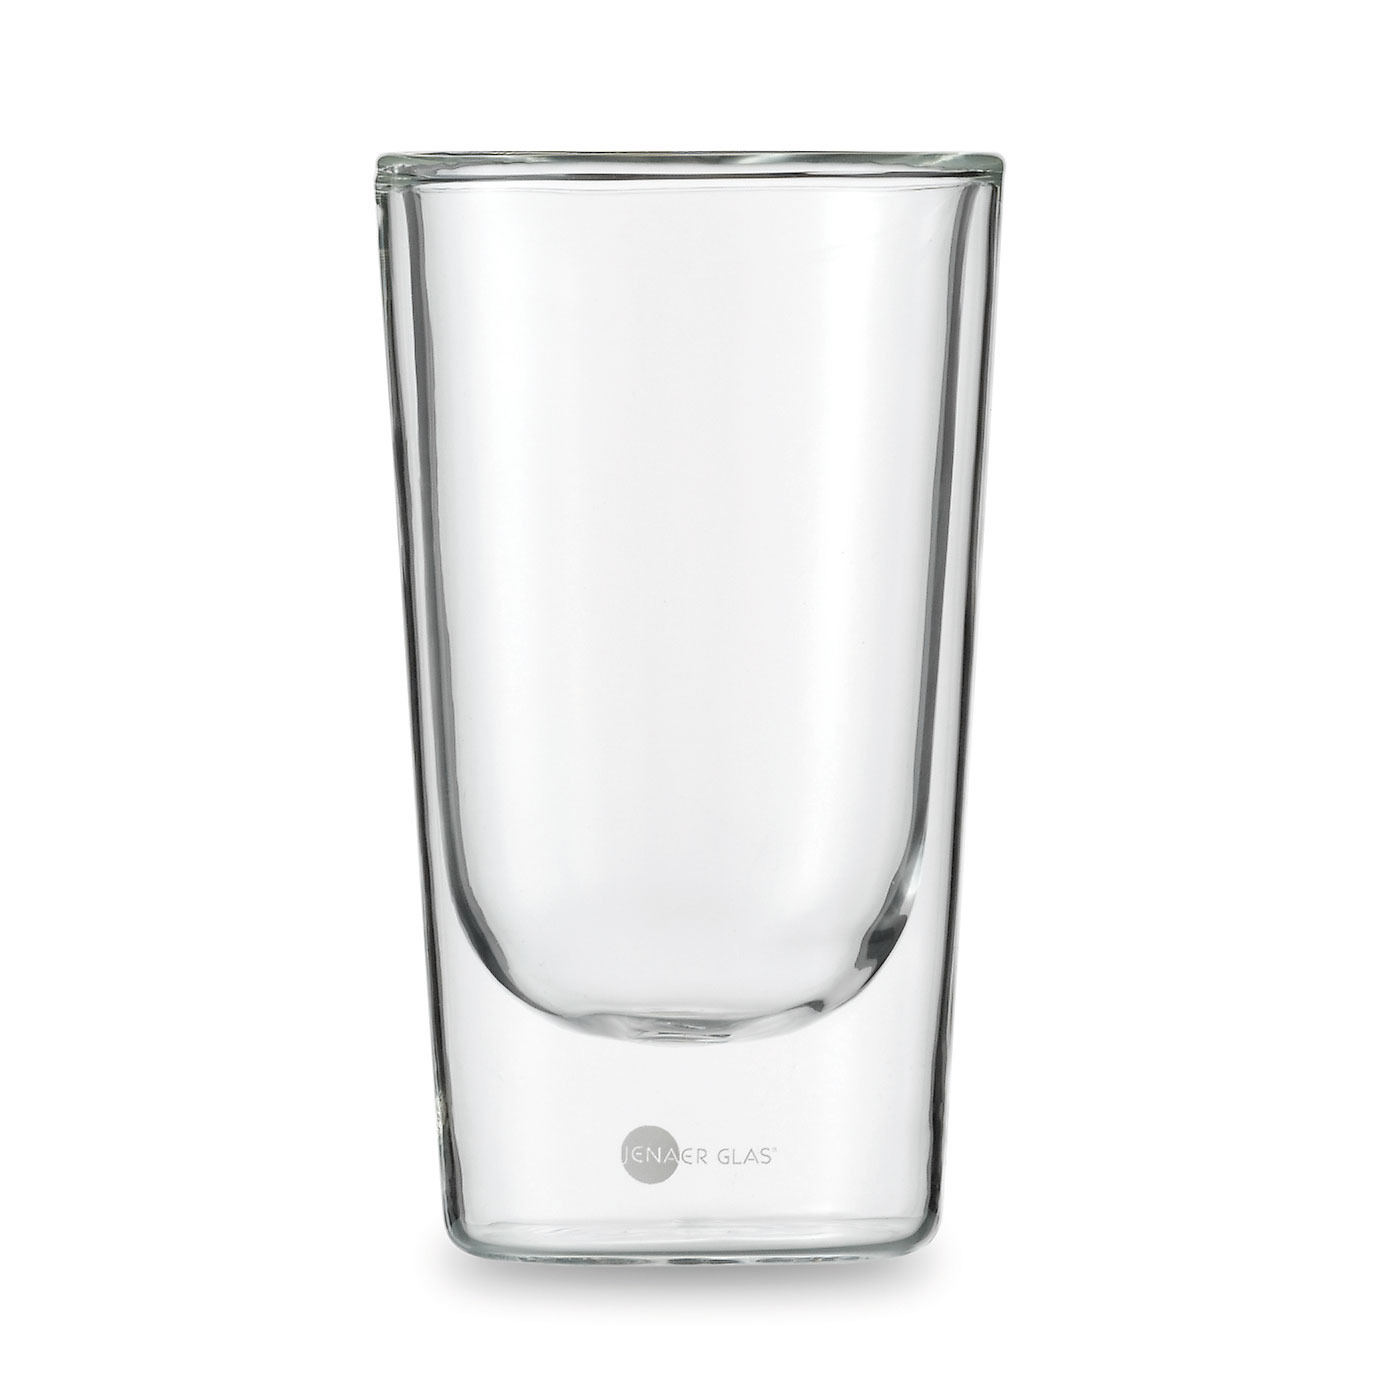 JENAER GLAS（イエナグラス）HOT'N COOL タンブラー | インテリア雑貨